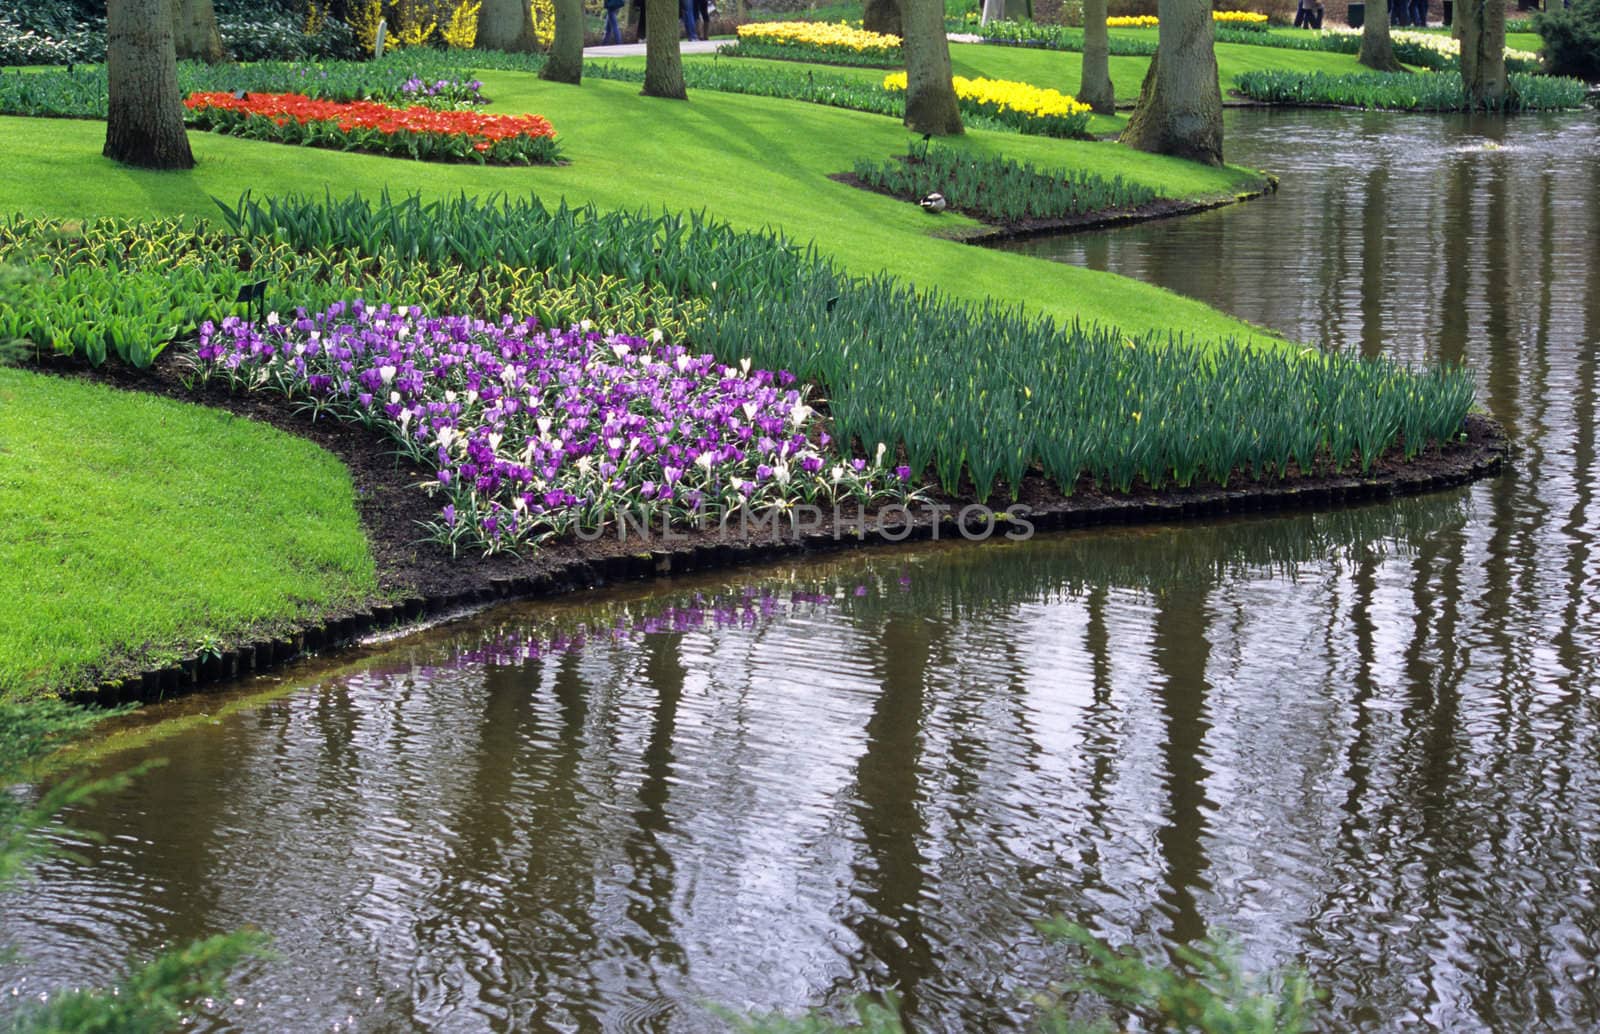 Keukenhof Gardens in the Netherlands is the world's most famous flower bulb garden.